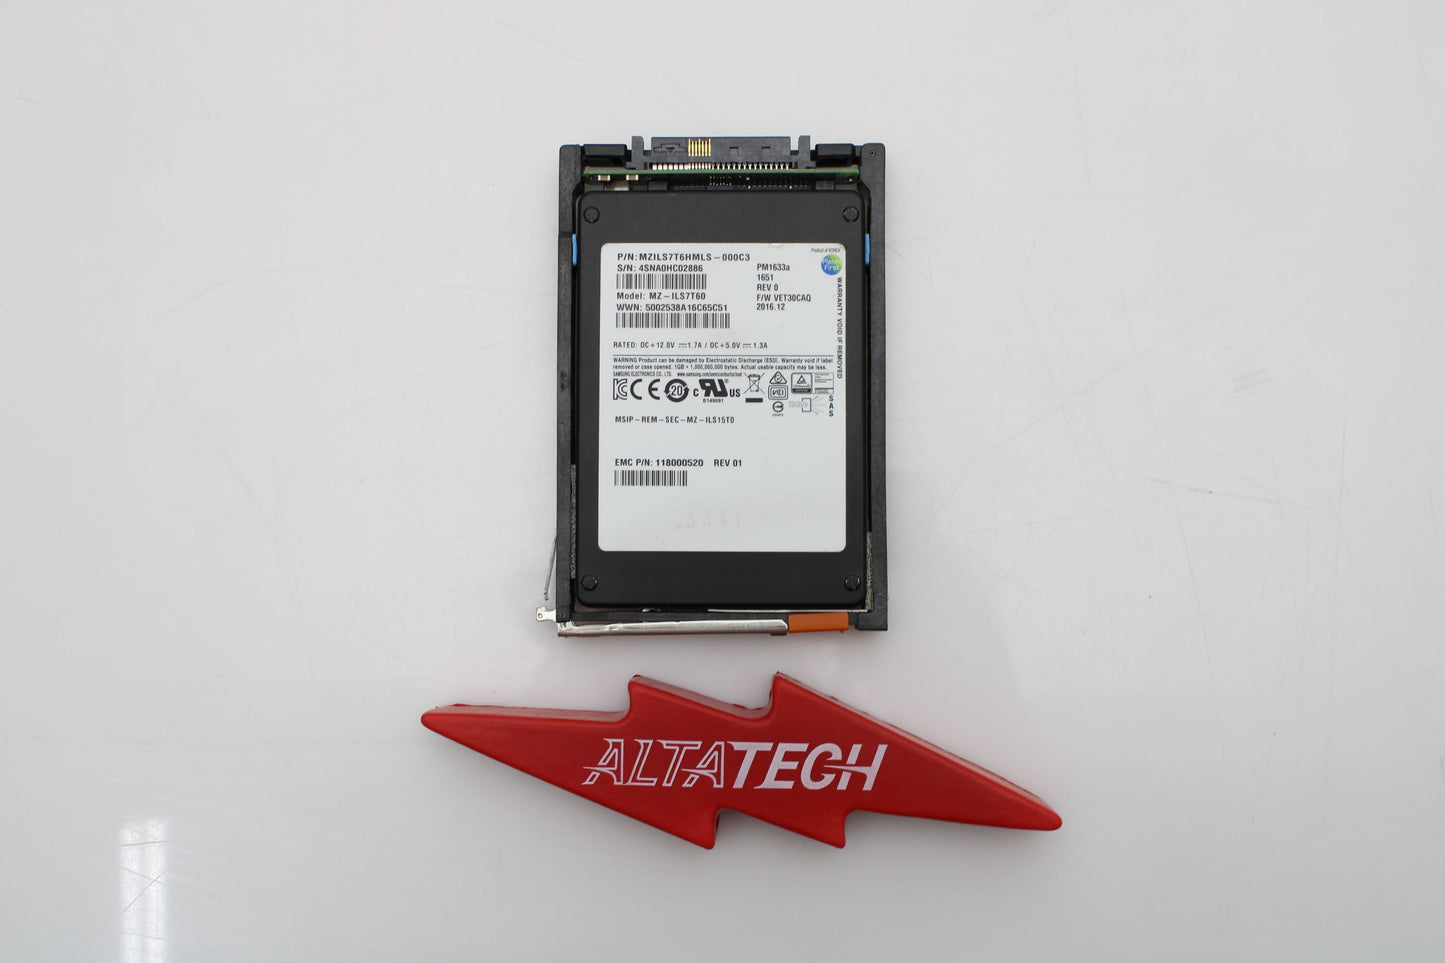 EMC 005052112 7.68TB SSD SAS 2.5 12G, Used